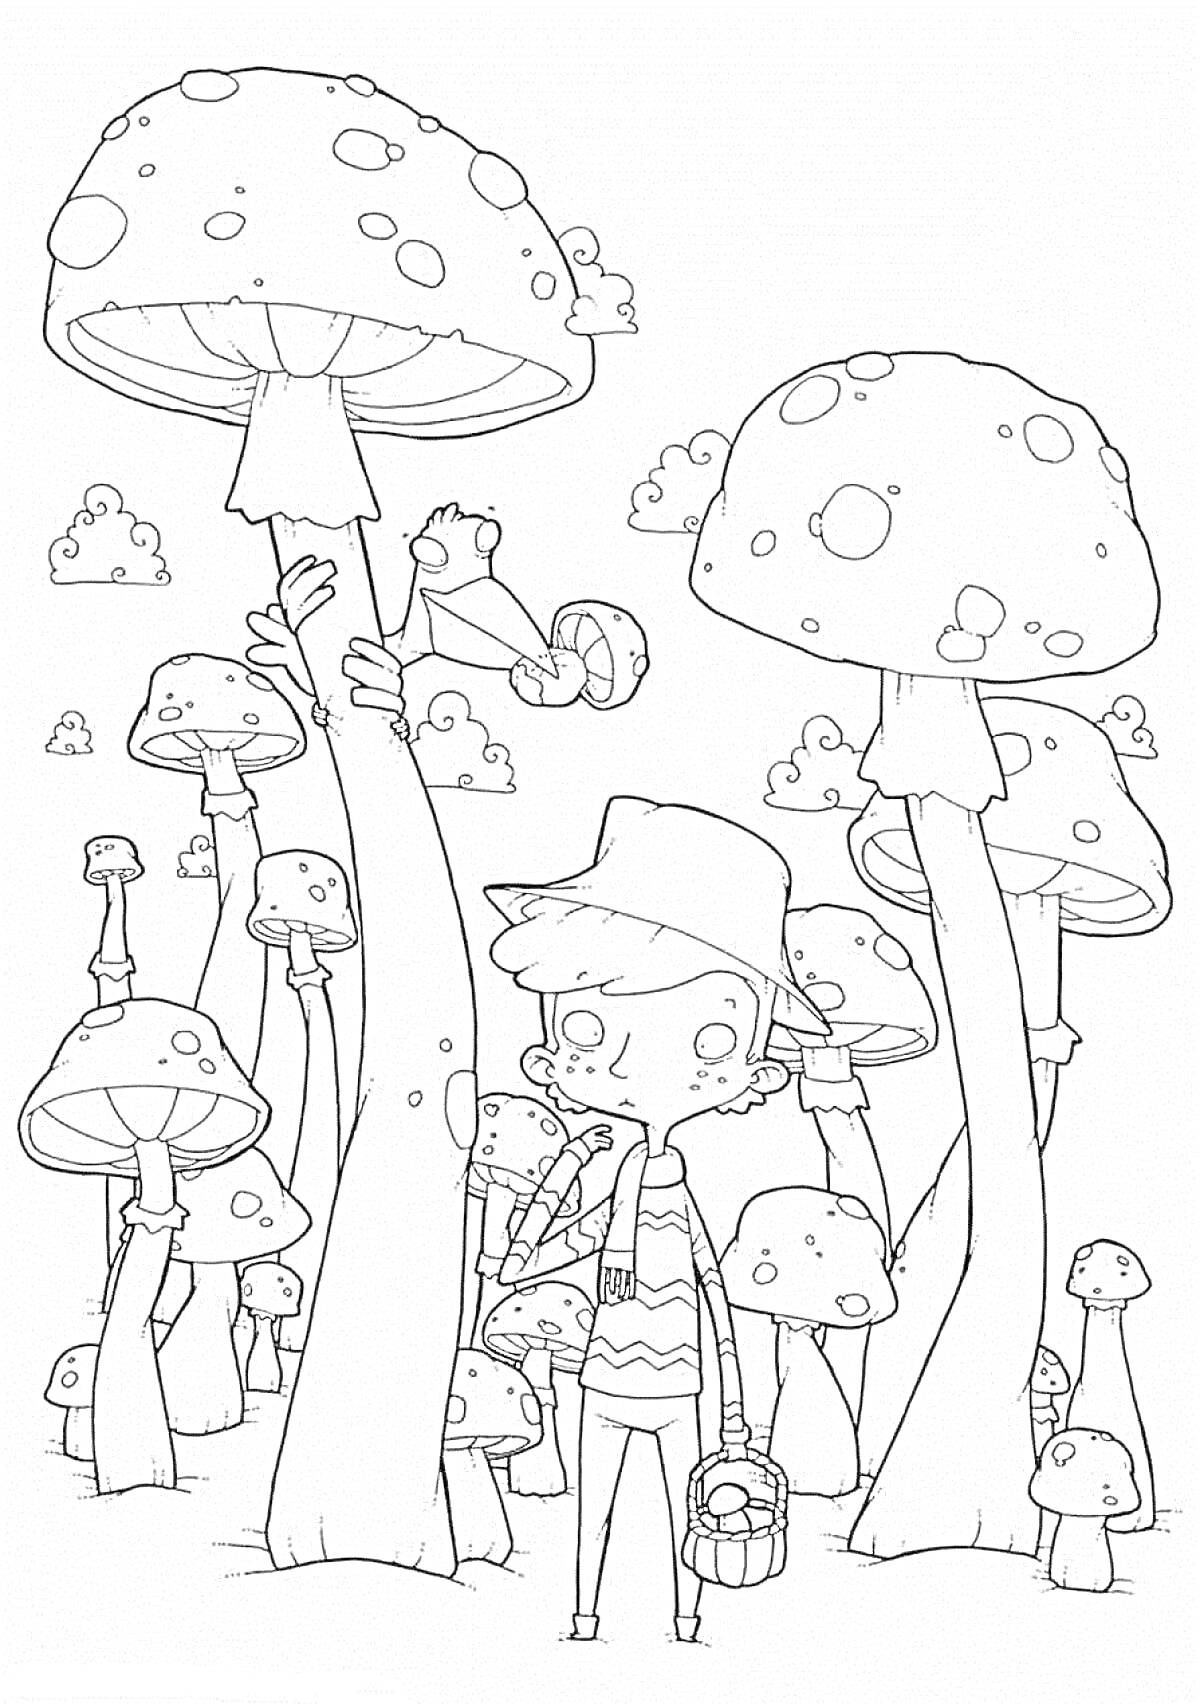 Раскраска Мальчик в шляпе среди огромных грибов с птичкой на вершине одного из грибов